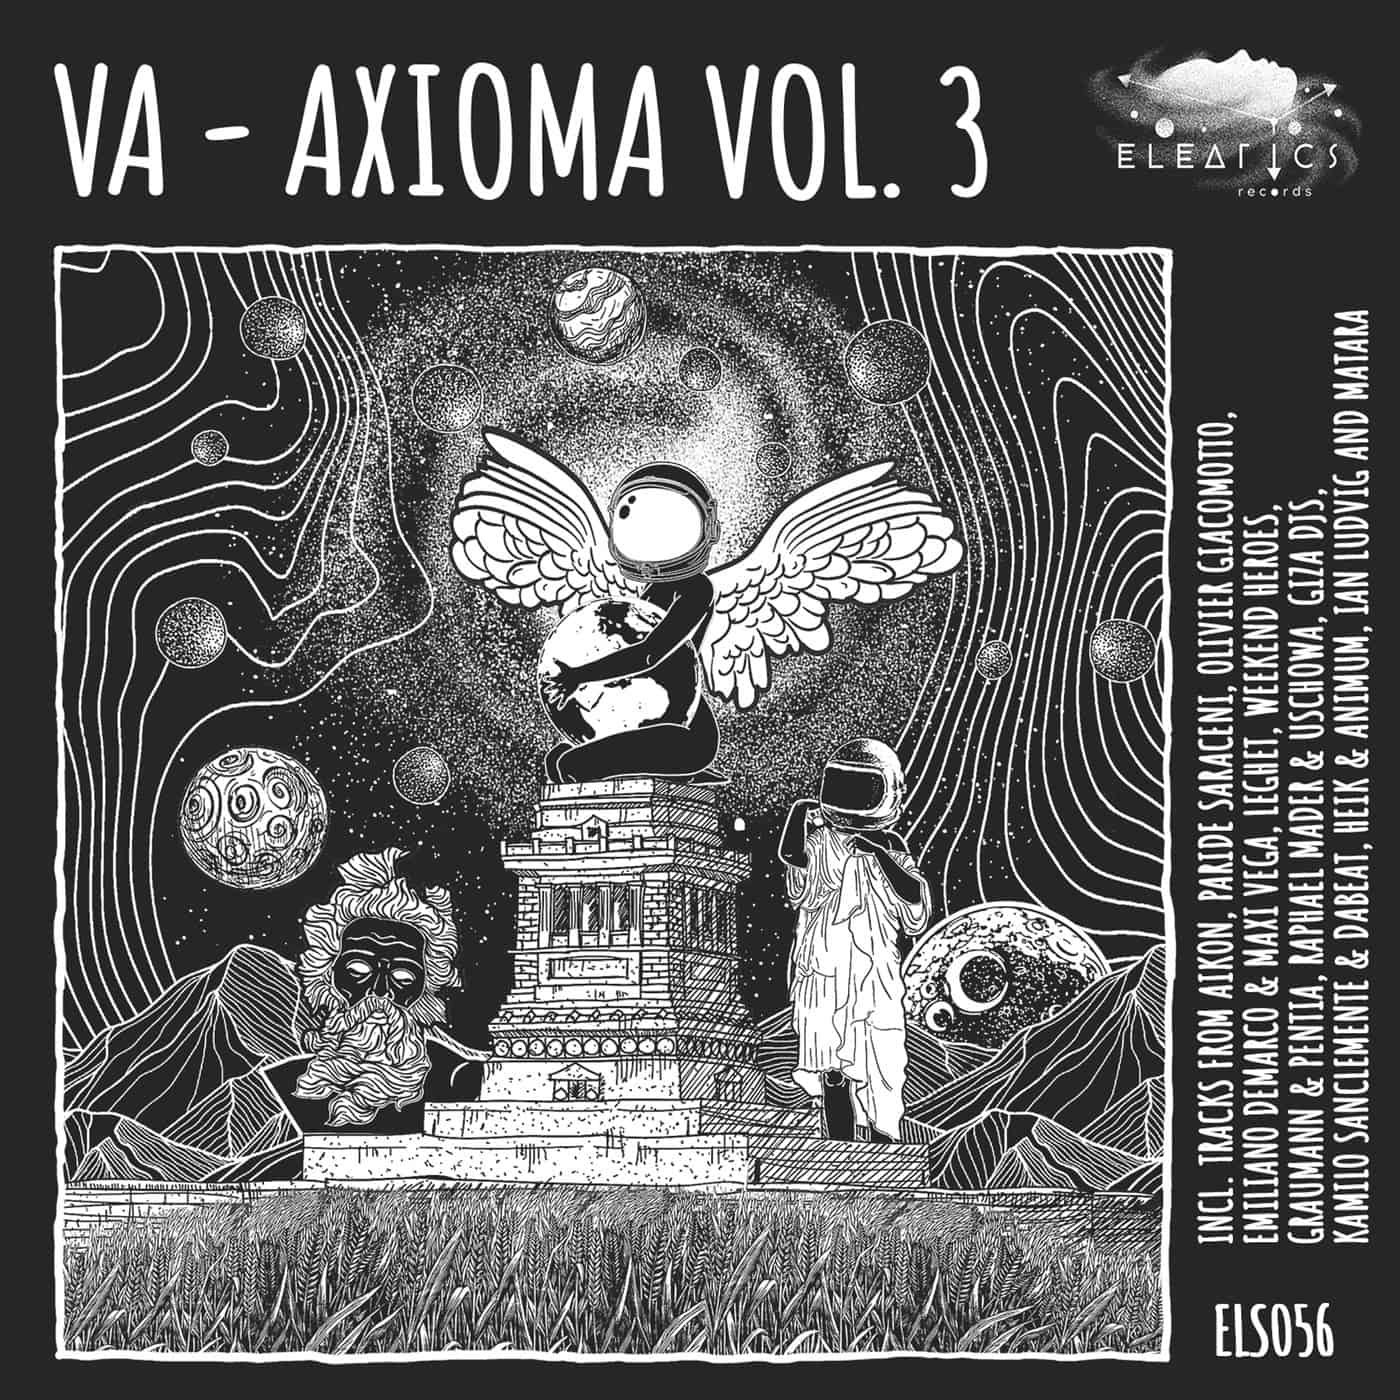 image cover: VA - Axioma vol. 3 / ELS056